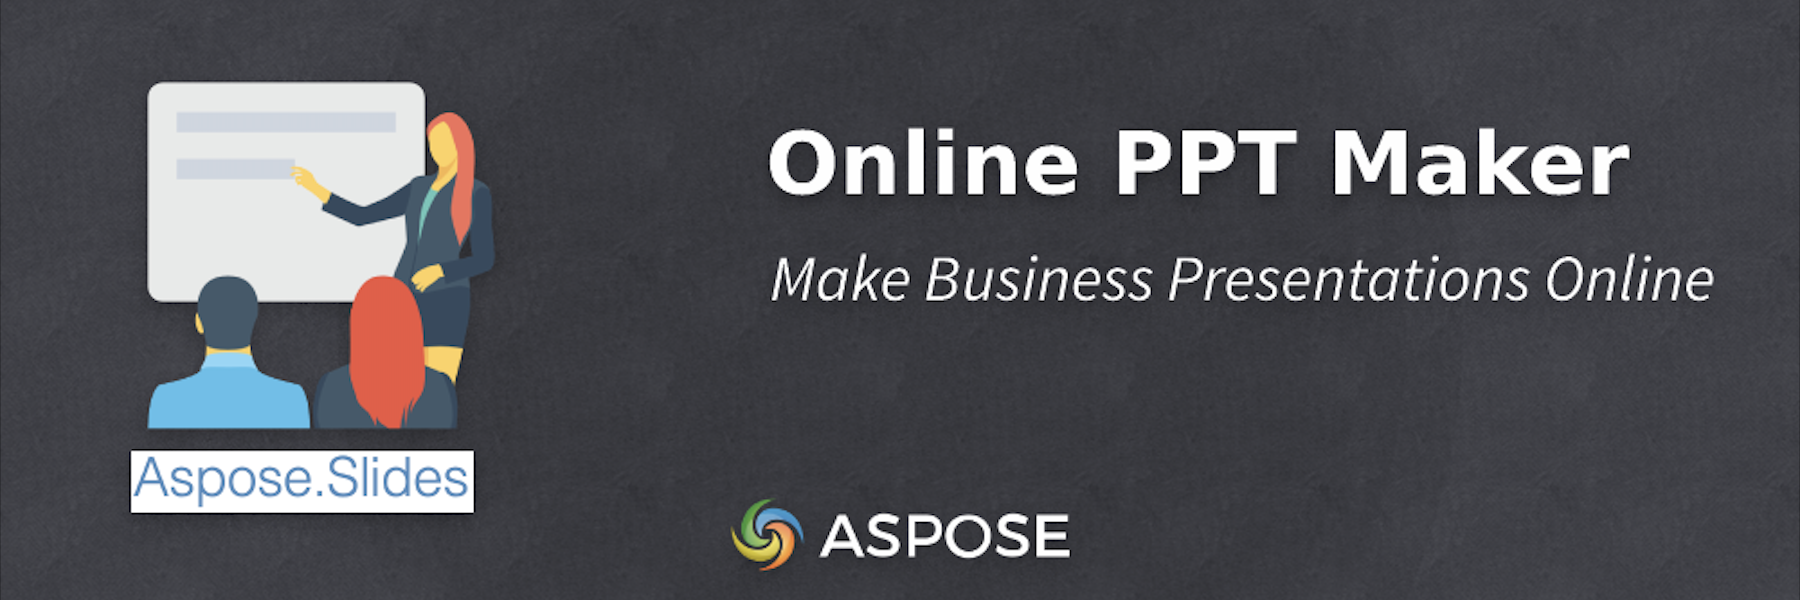 온라인 PPT 메이커 - 온라인으로 비즈니스 프레젠테이션 만들기